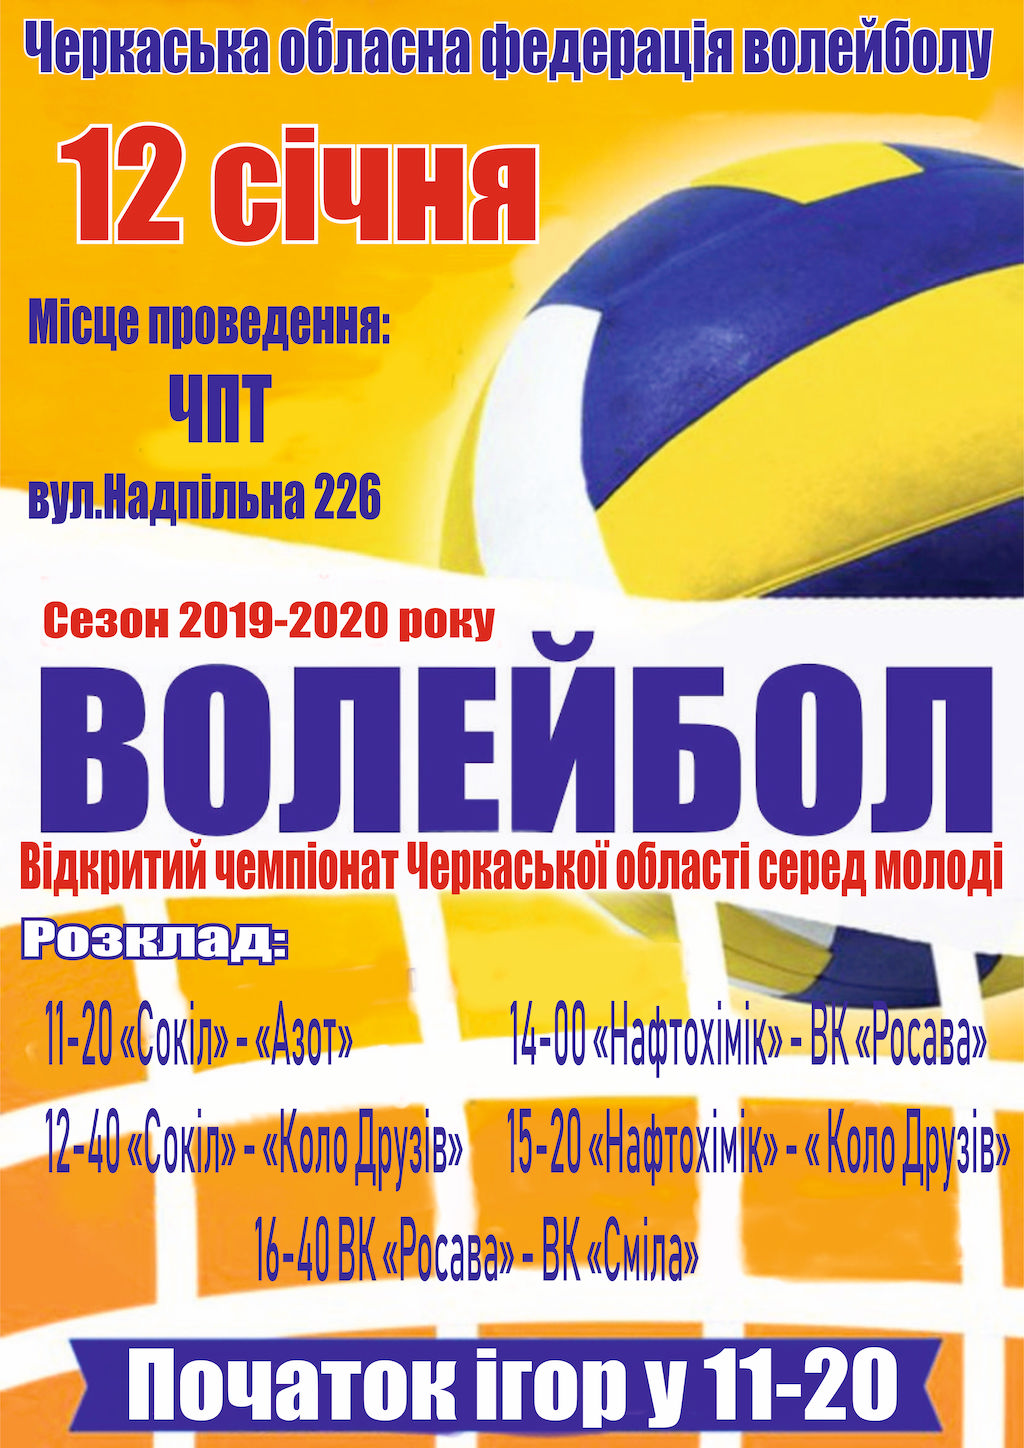 Відкритий чемпіонат Черкаської області  сезон 2019-2020 року серед молоді - volleyball.uaВідкритий чемпіонат Черкаської області  сезон 2019-2020 року серед молоді